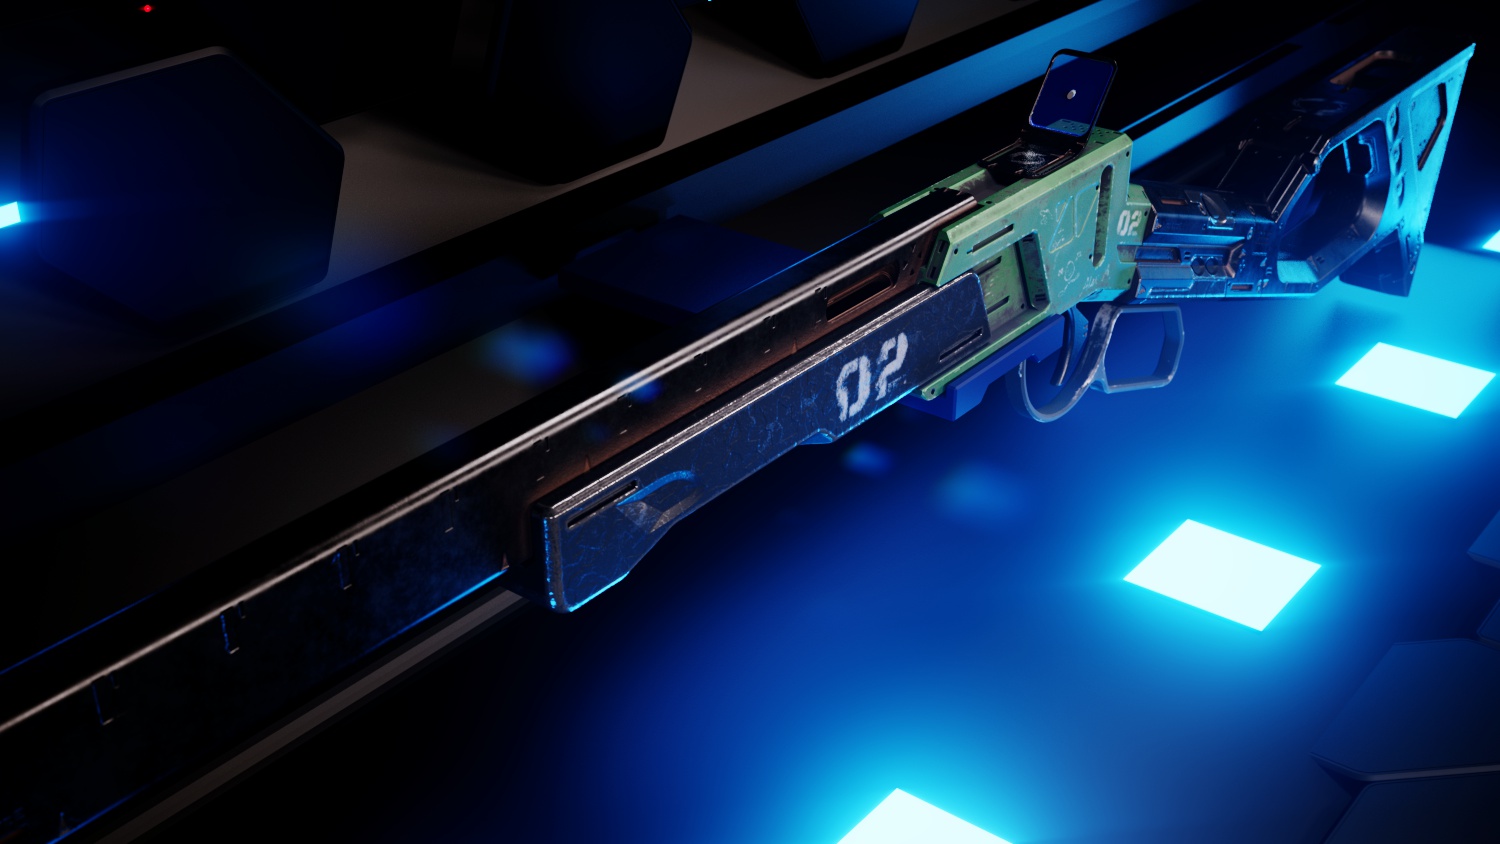 Three D Guns 2 - Concept Rifle